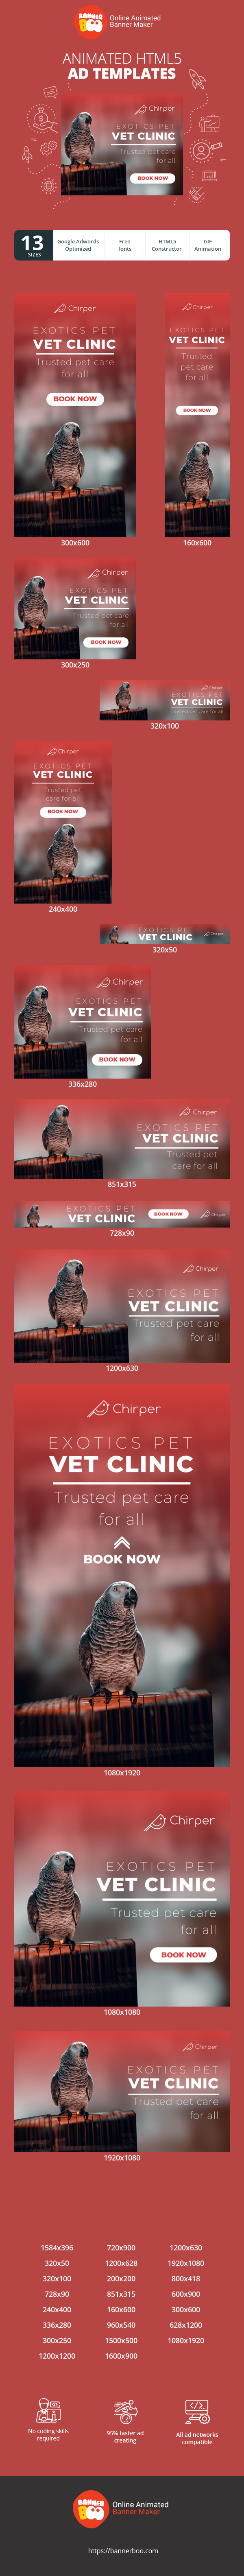 Шаблон рекламного банера — Exotics Pet Vet Clinic — Trusted Care For All